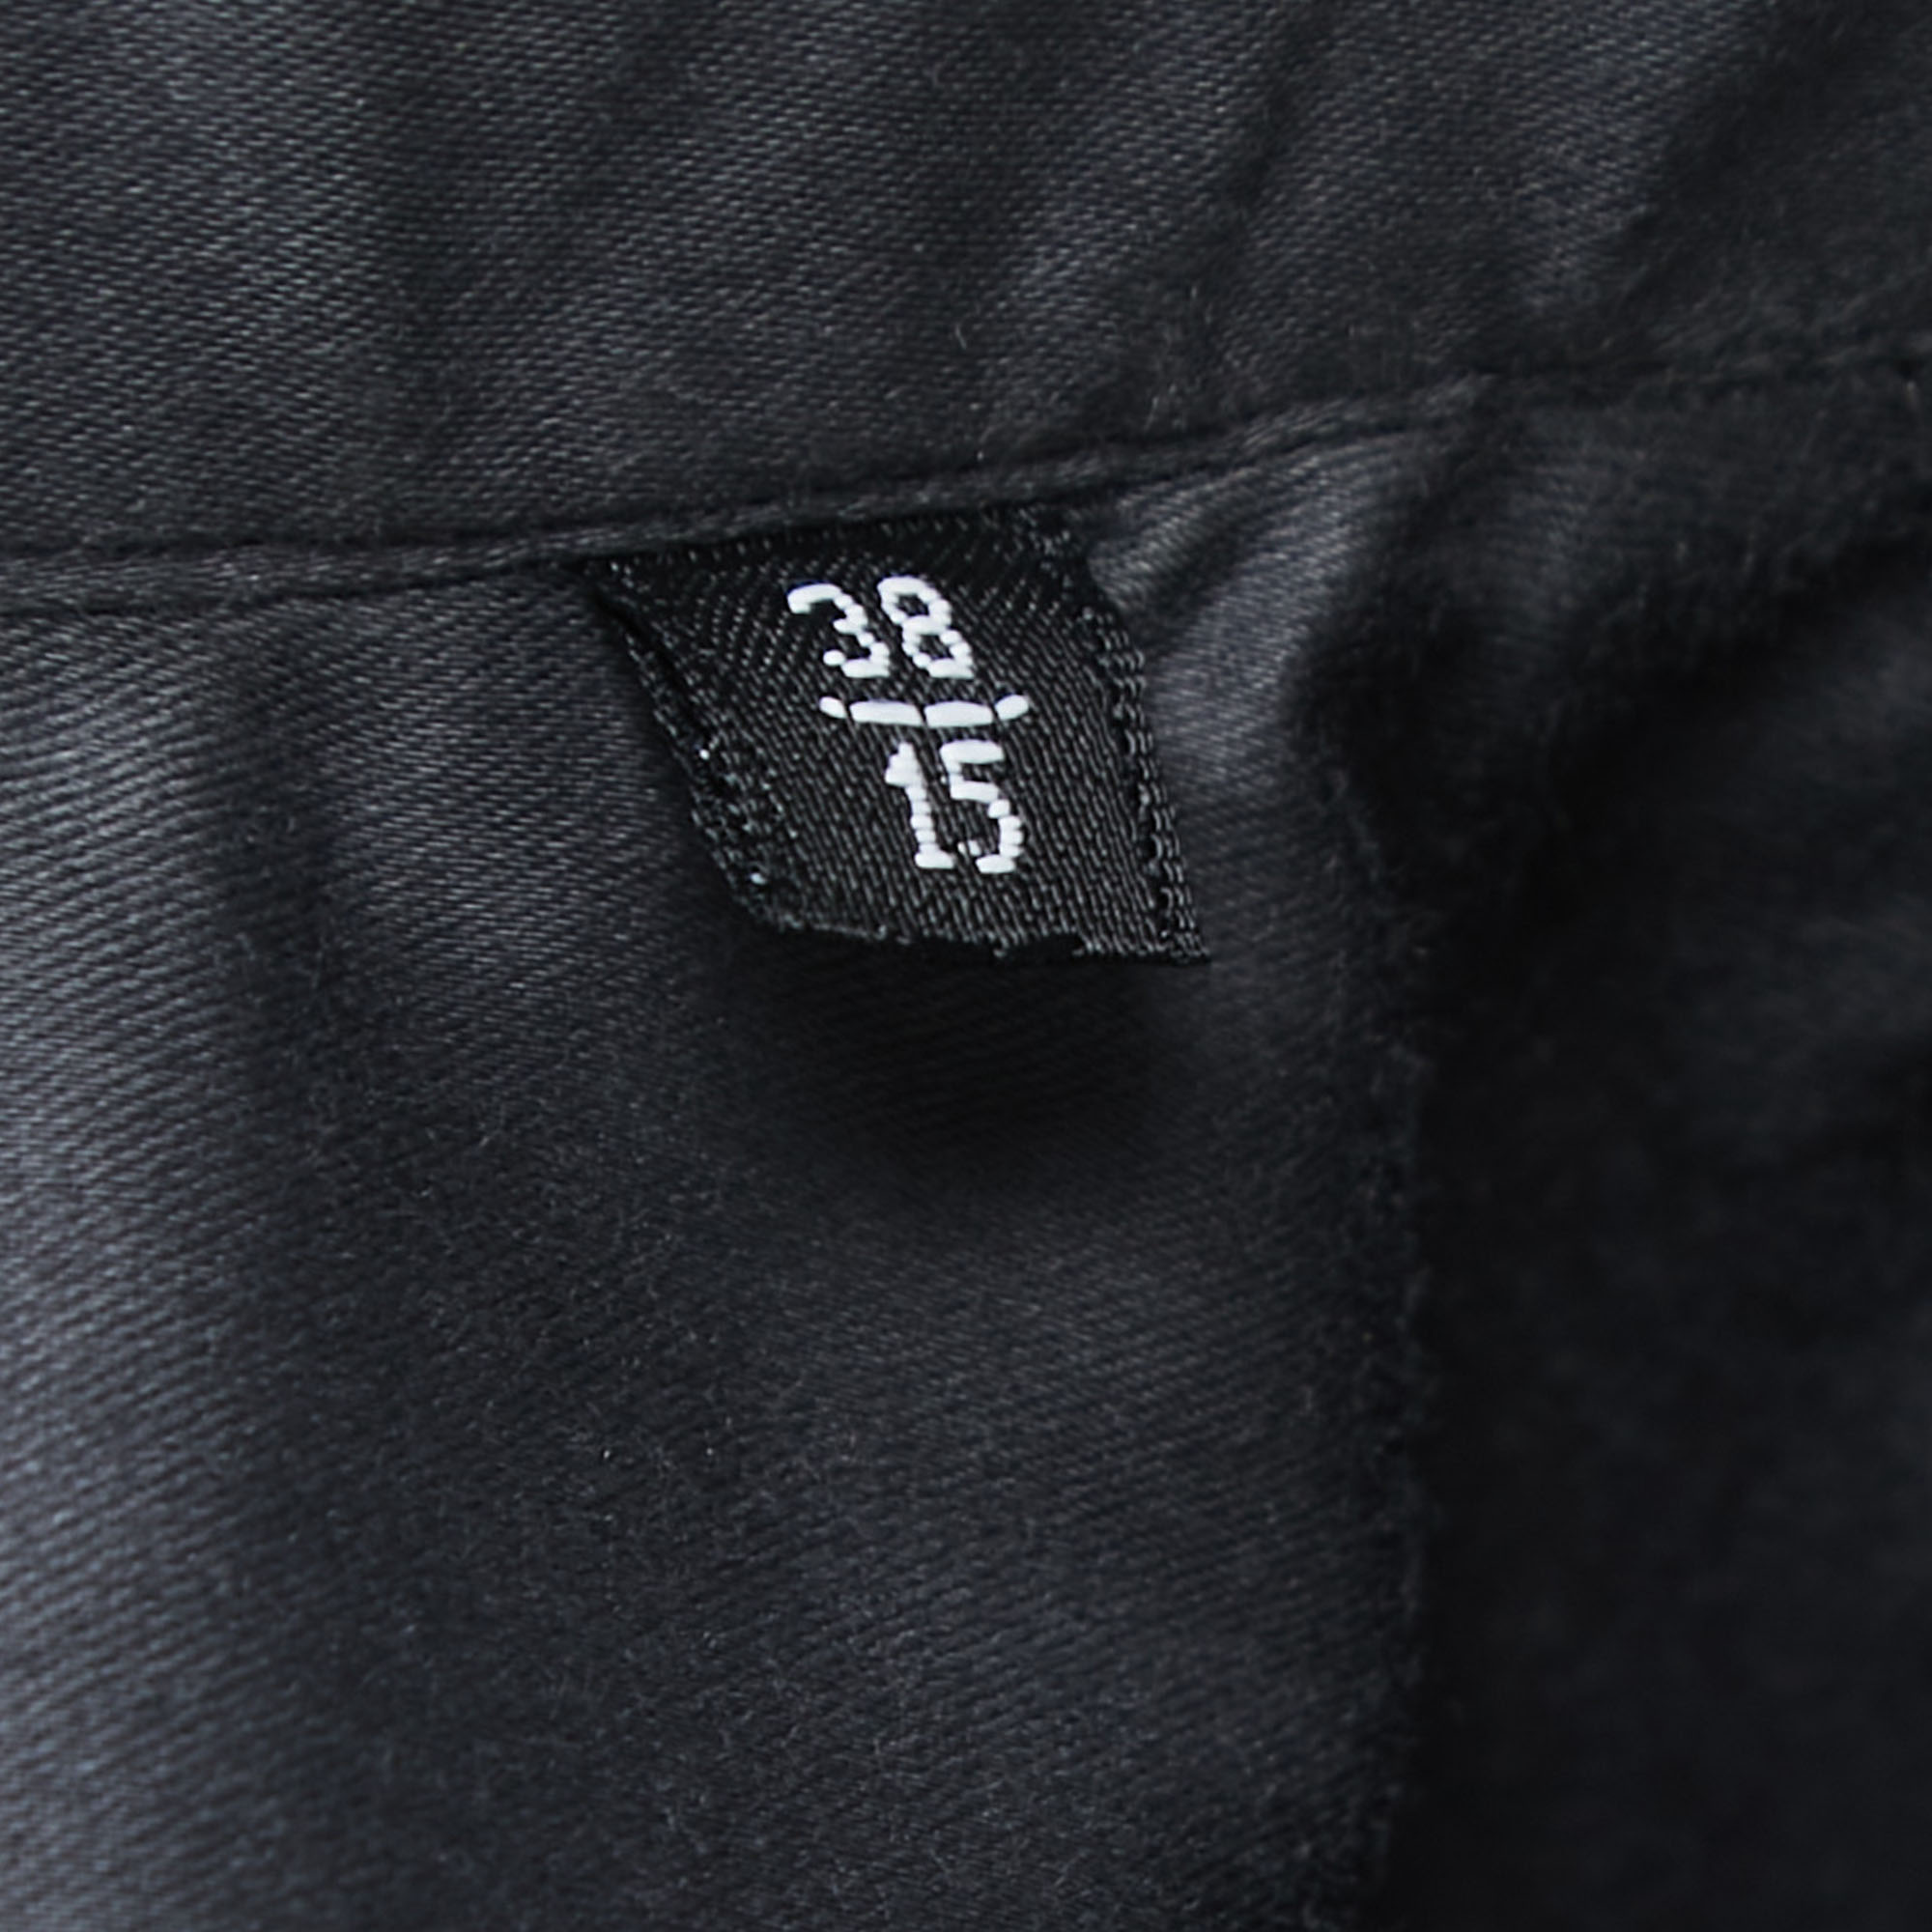 Emporio Armani Grey Cotton Button Front Long Sleeve Shirt S